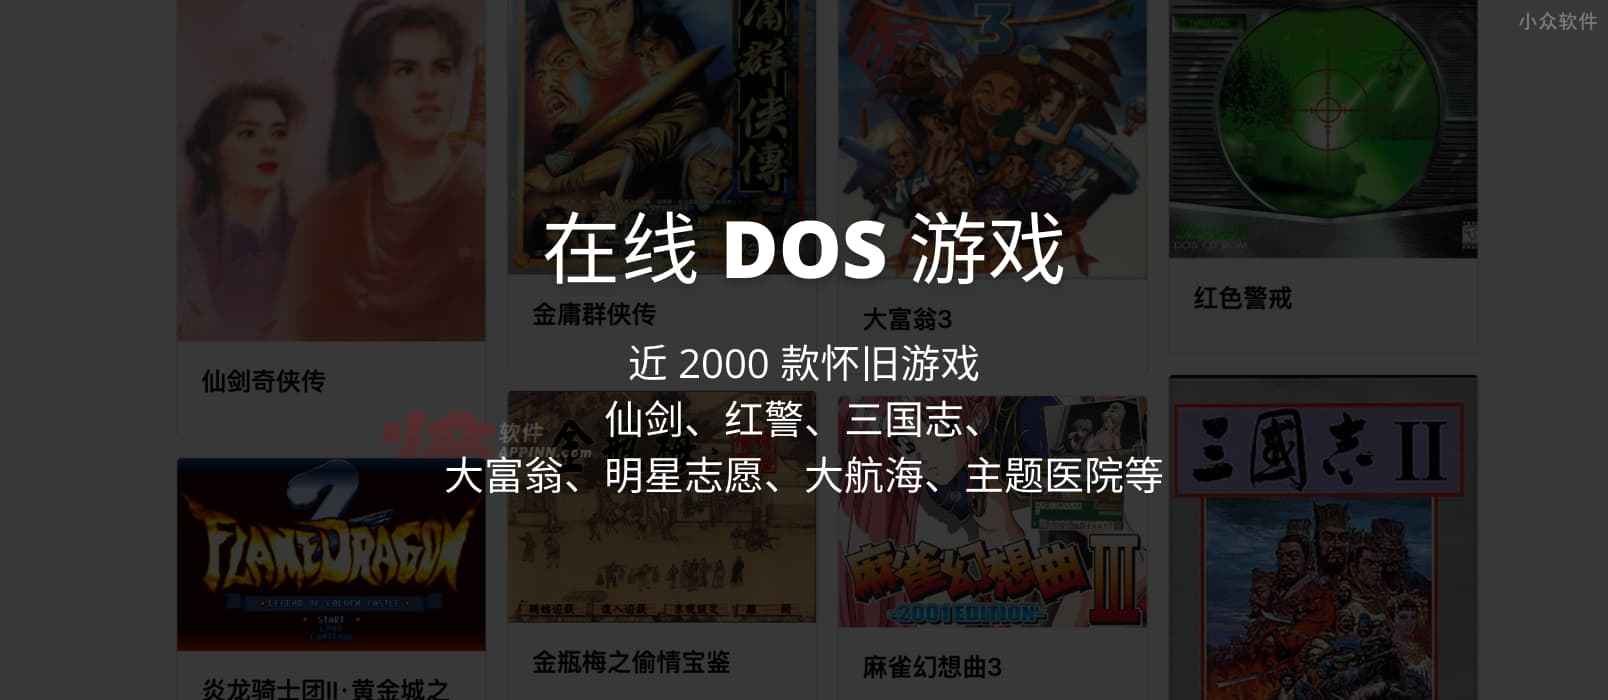 在线 DOS 游戏 - 近 2000 款怀旧游戏，仙剑、红警、三国志、大富翁、明星志愿、大航海、主题医院等